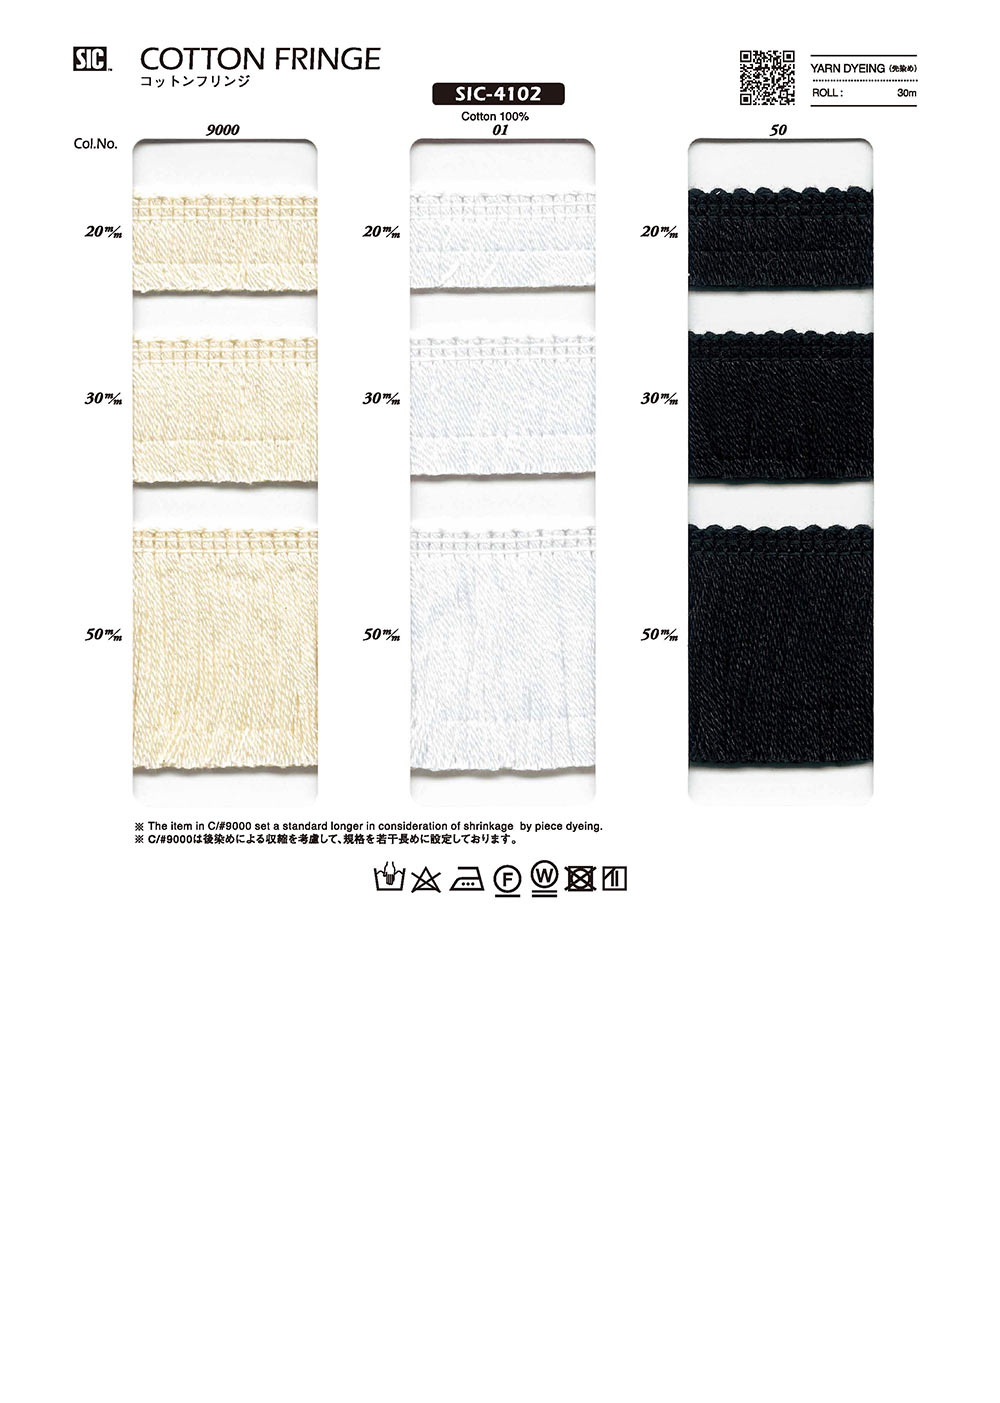 SIC-4102 Cotton Fringe[Lace] SHINDO(SIC)